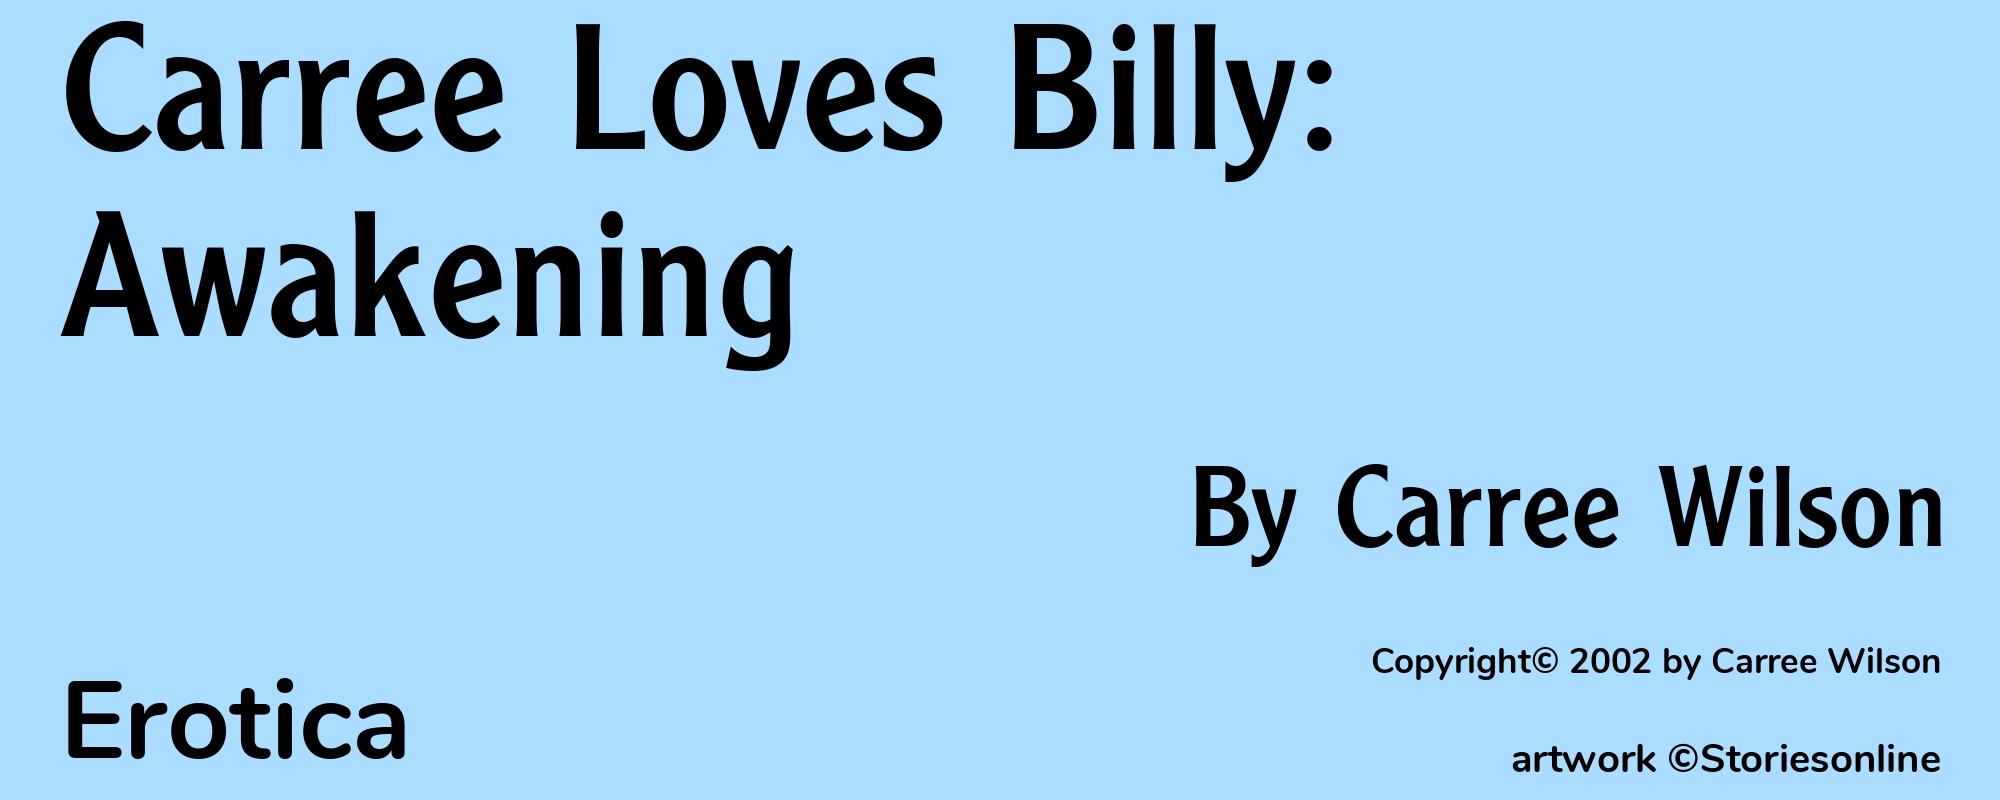 Carree Loves Billy: Awakening - Cover